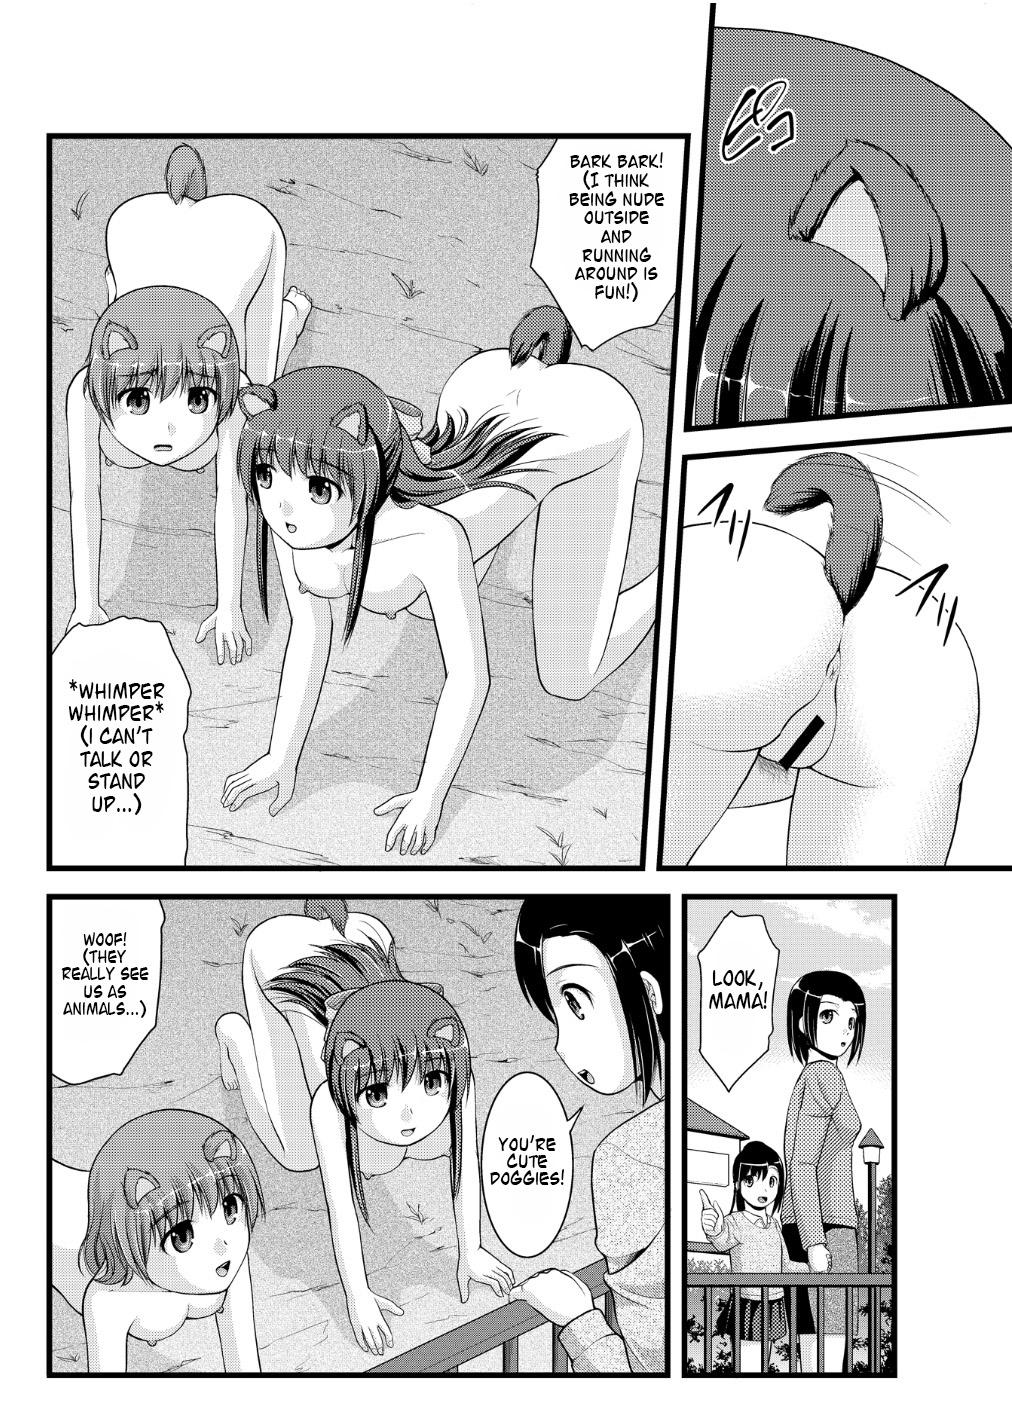 Nude [Shinenkan] Joutaihenka Manga vol. 4 ~Umareta mama no Sugata de~ | Transformation Comics Vol. 4 ~In Their Natural Born Figure~ [English] Flaca - Page 6